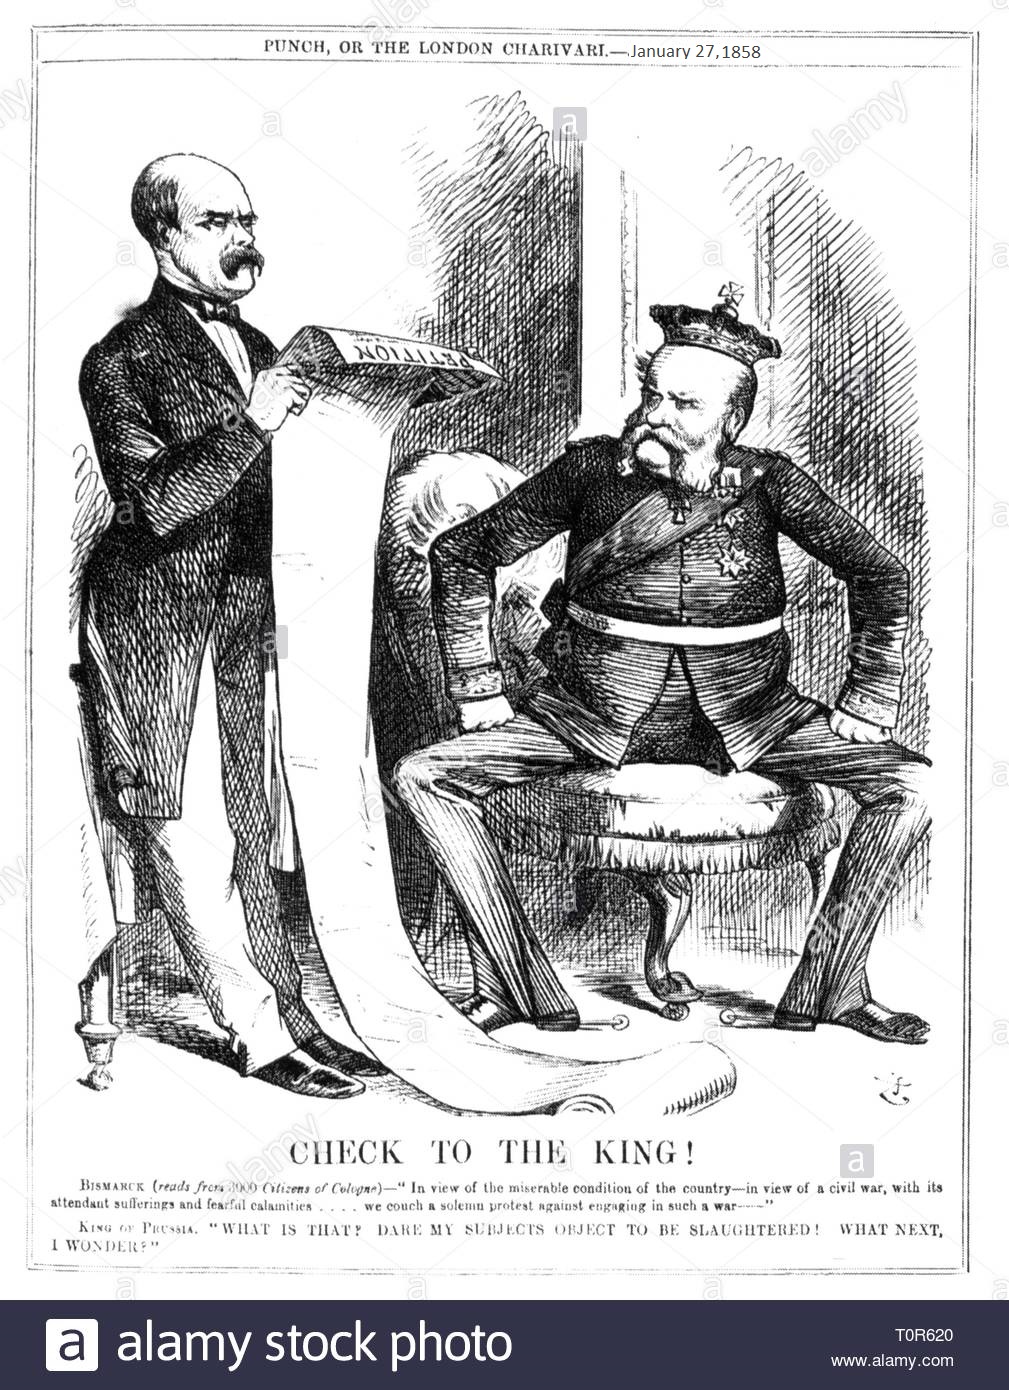 austro-prussian-war1866-caricature-prime-minister-otto-von-bismarck-reading-to-king-william-it...jpg